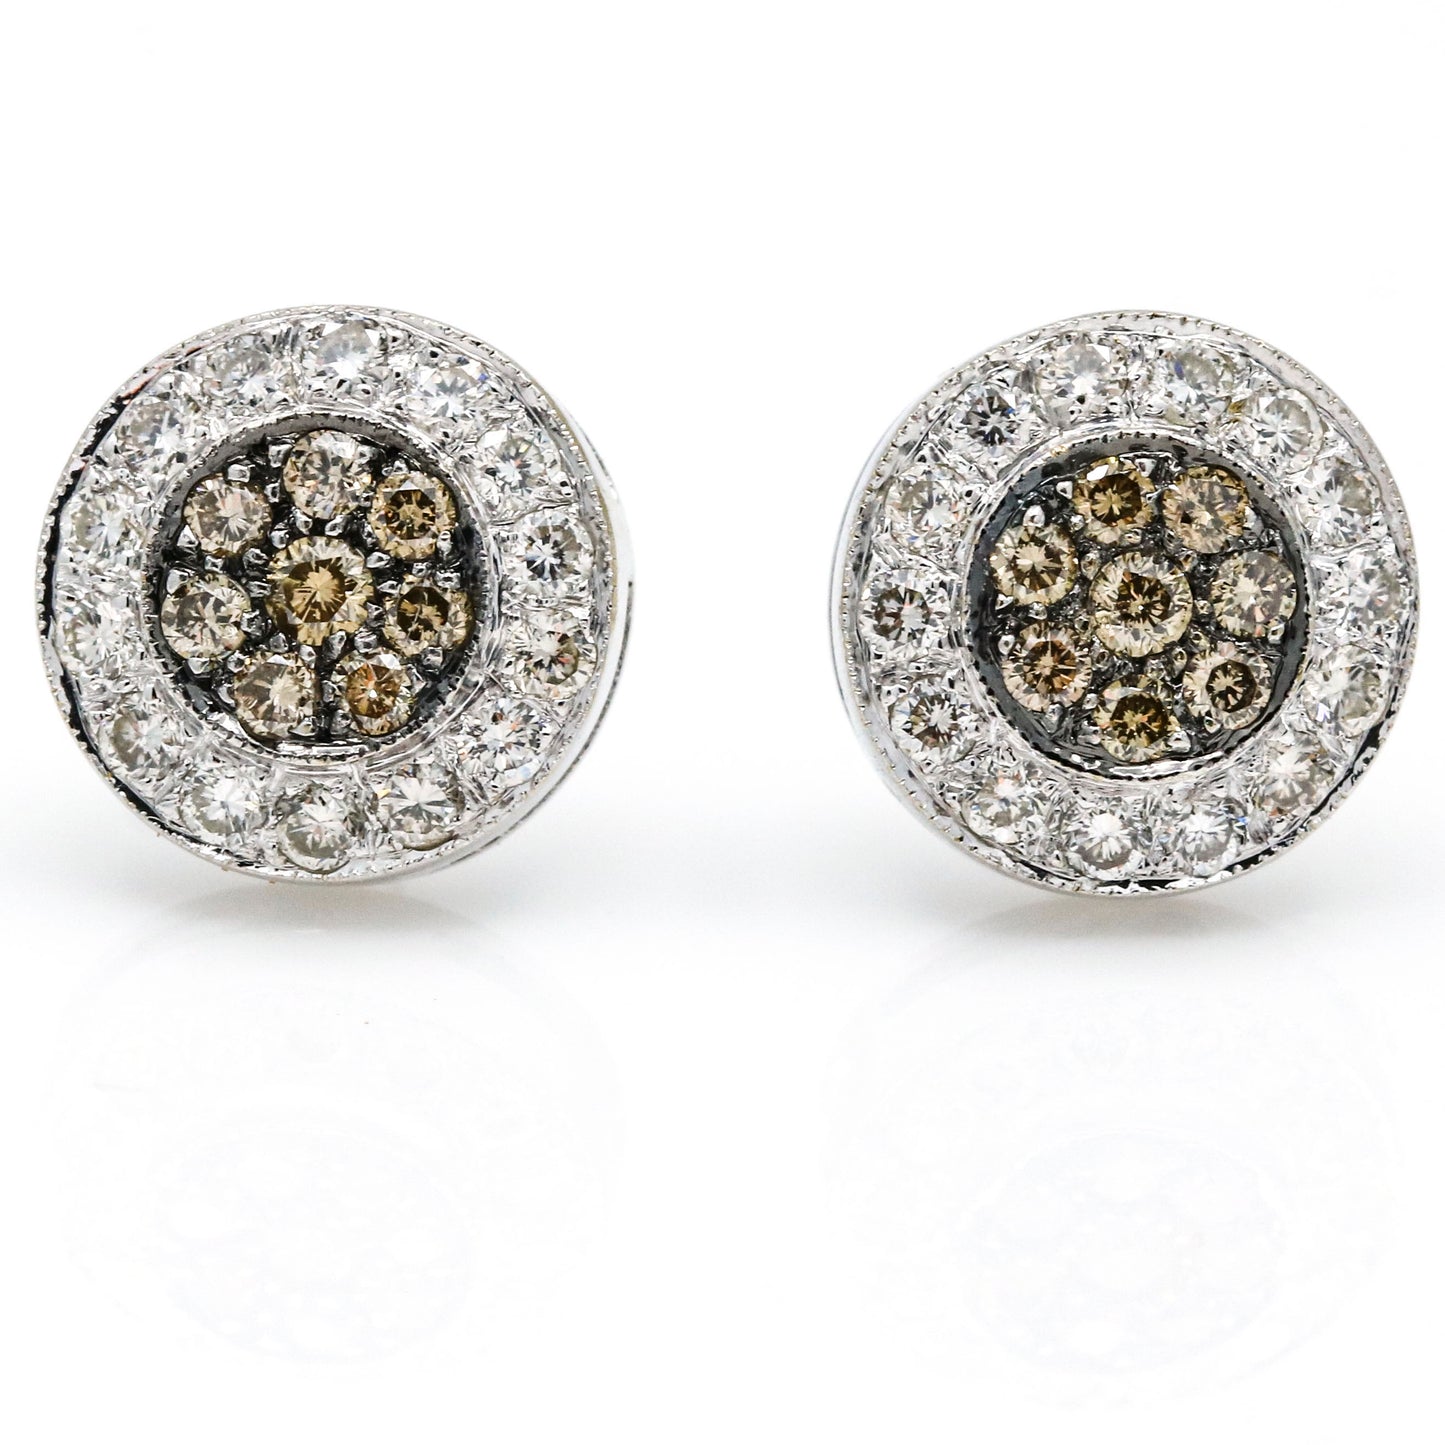 Women's Fancy Colored Diamond Round Stud Earrings in 14k White Gold (.75 cttw )